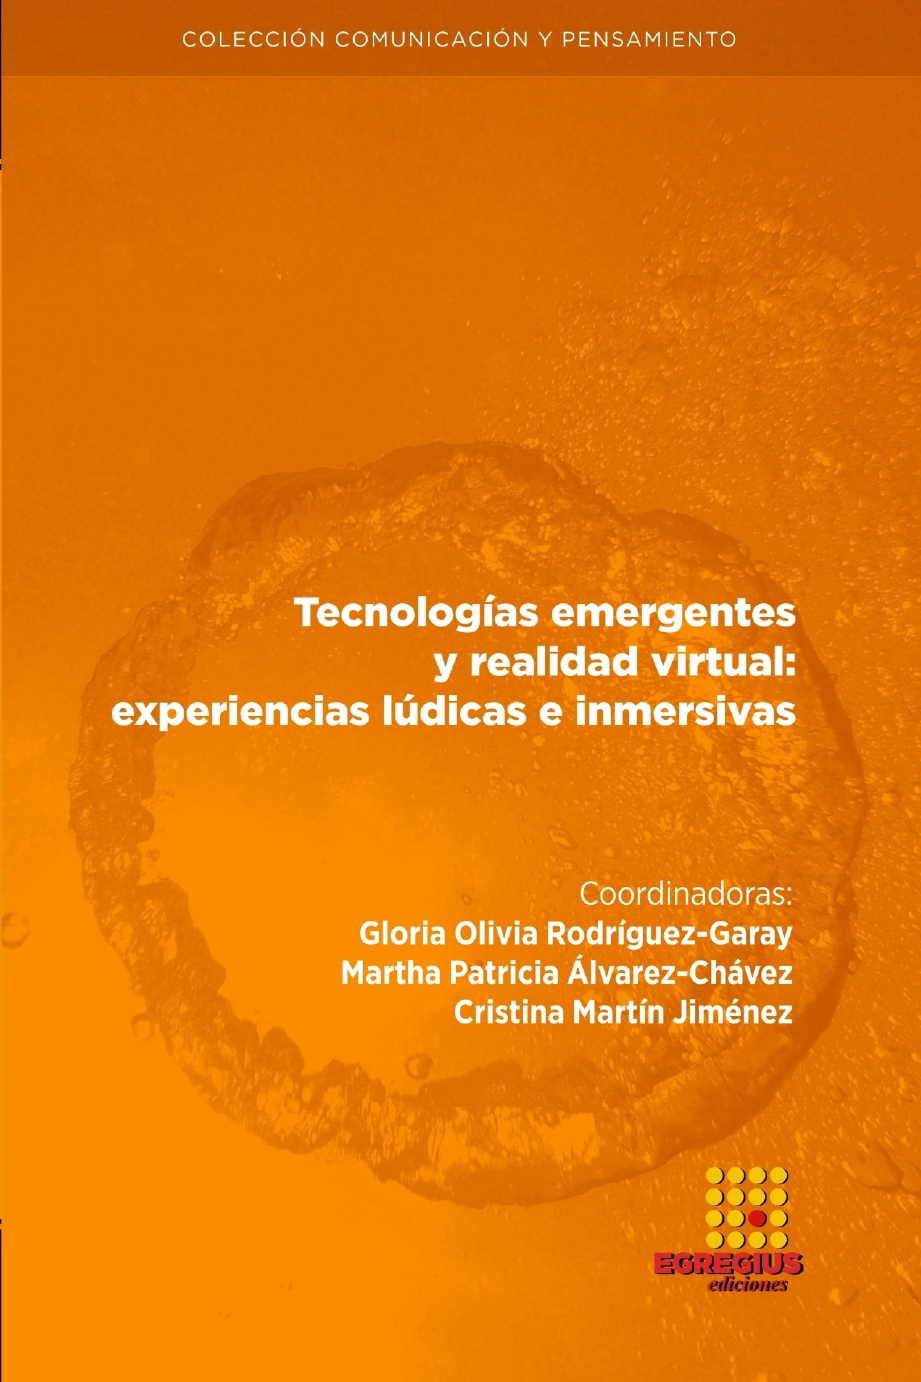 Imagen de portada del libro Tecnologías emergentes y realidad virtual